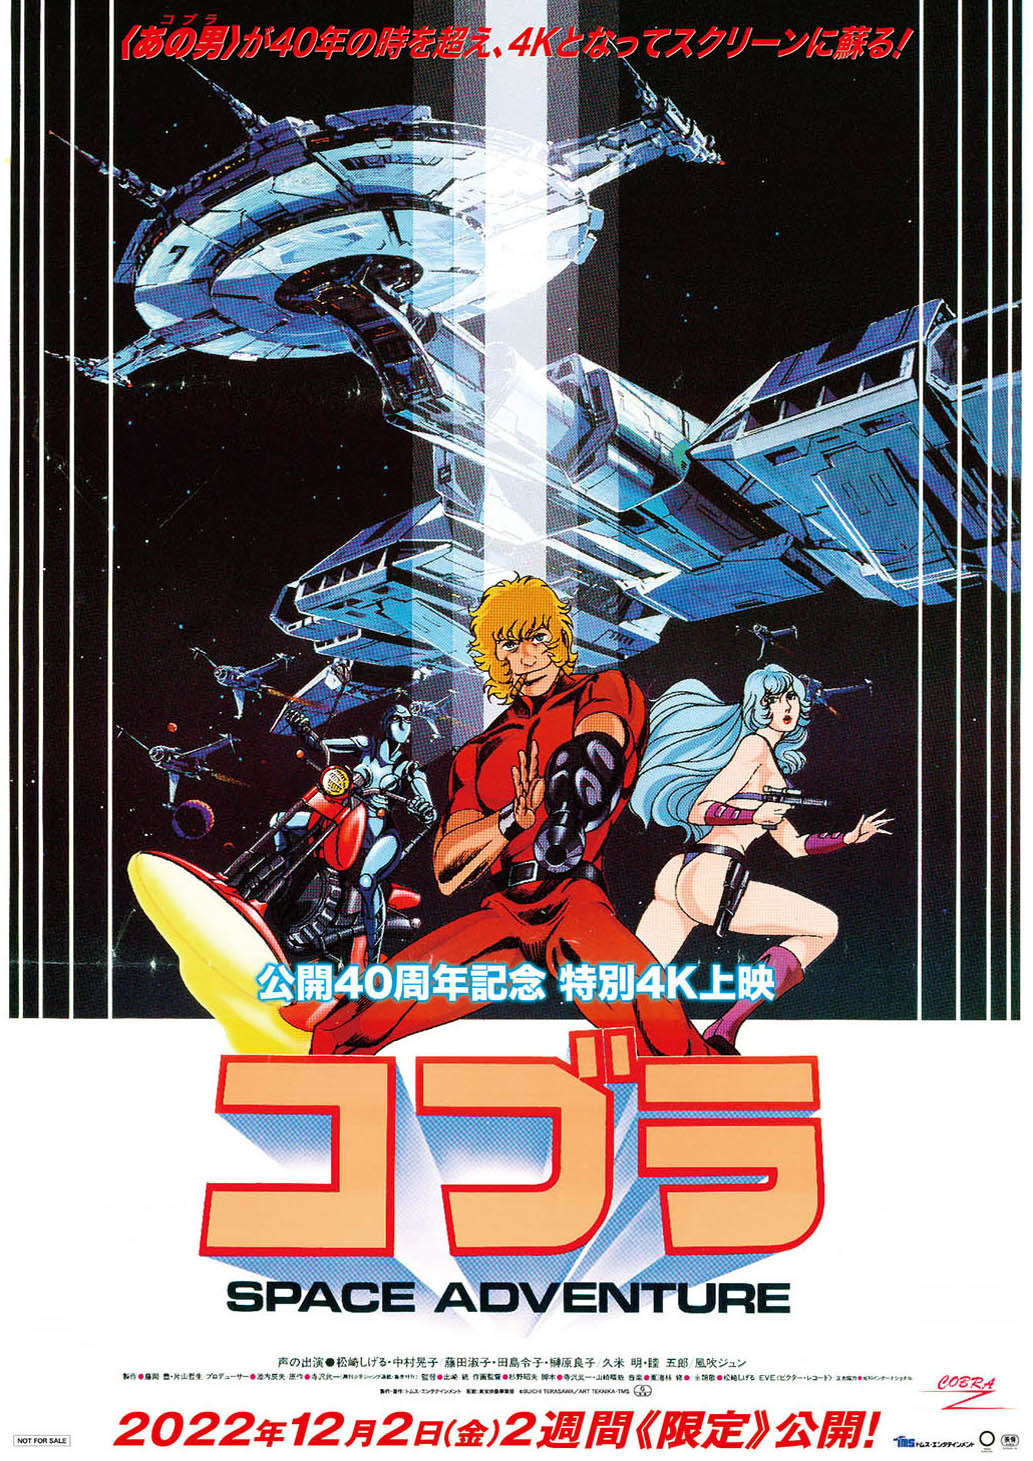 SFアニメ映画「スペースアドベンチャー コブラ」公開40周年記念で4K